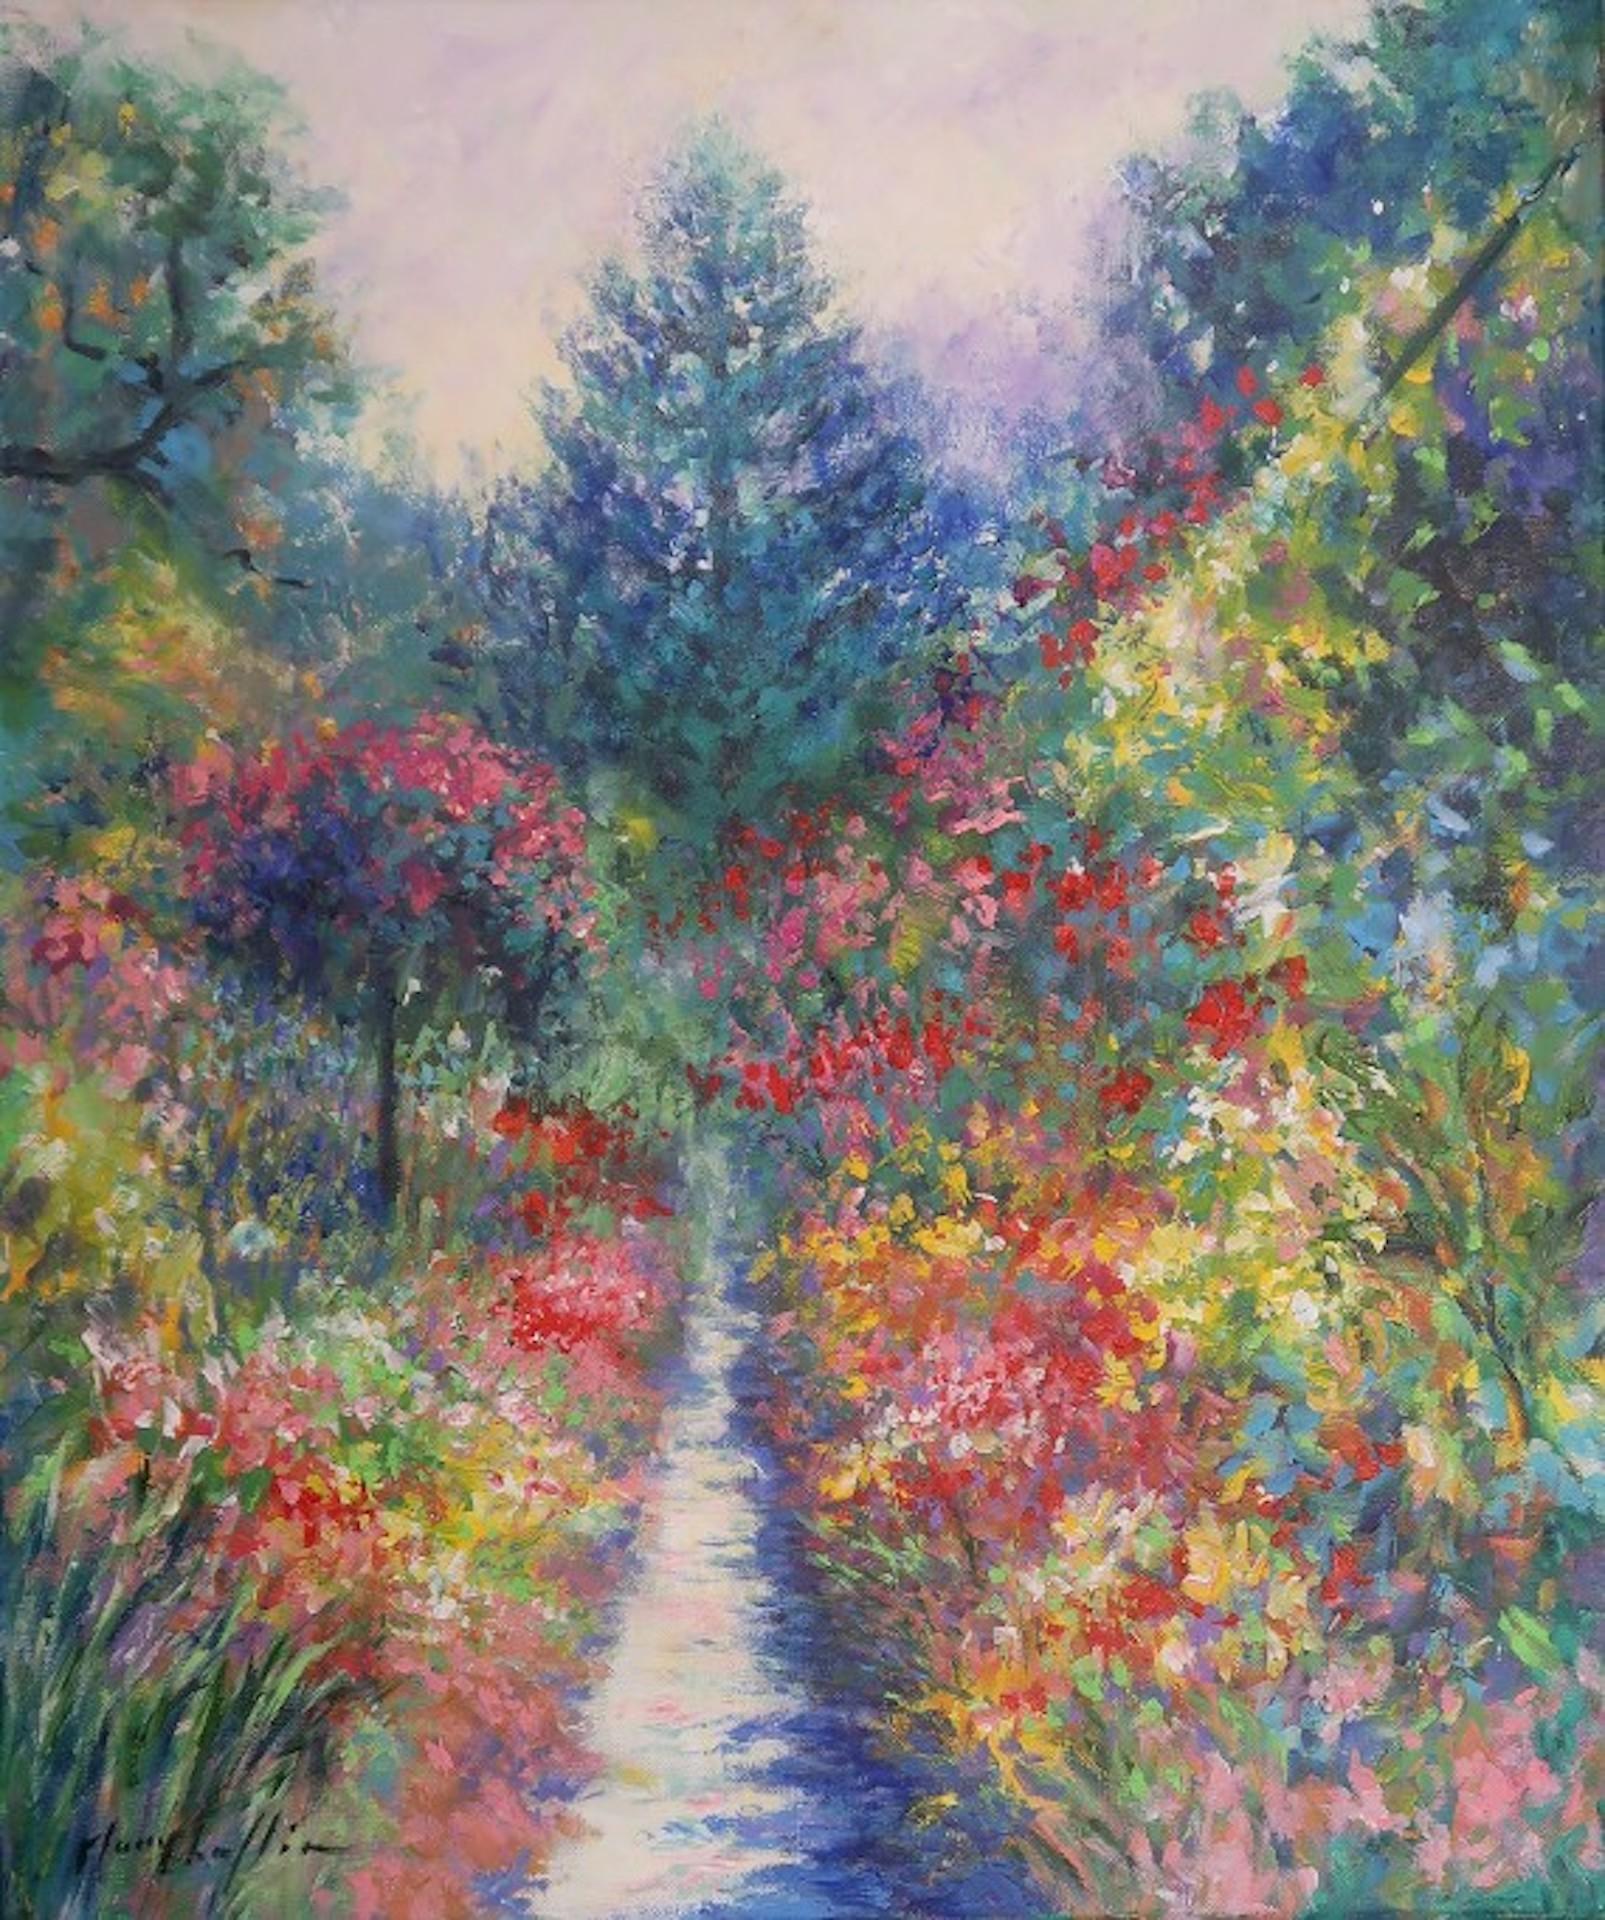 Le temps des roses au jardin de Monet, peinture originale de paysage floral impressionniste